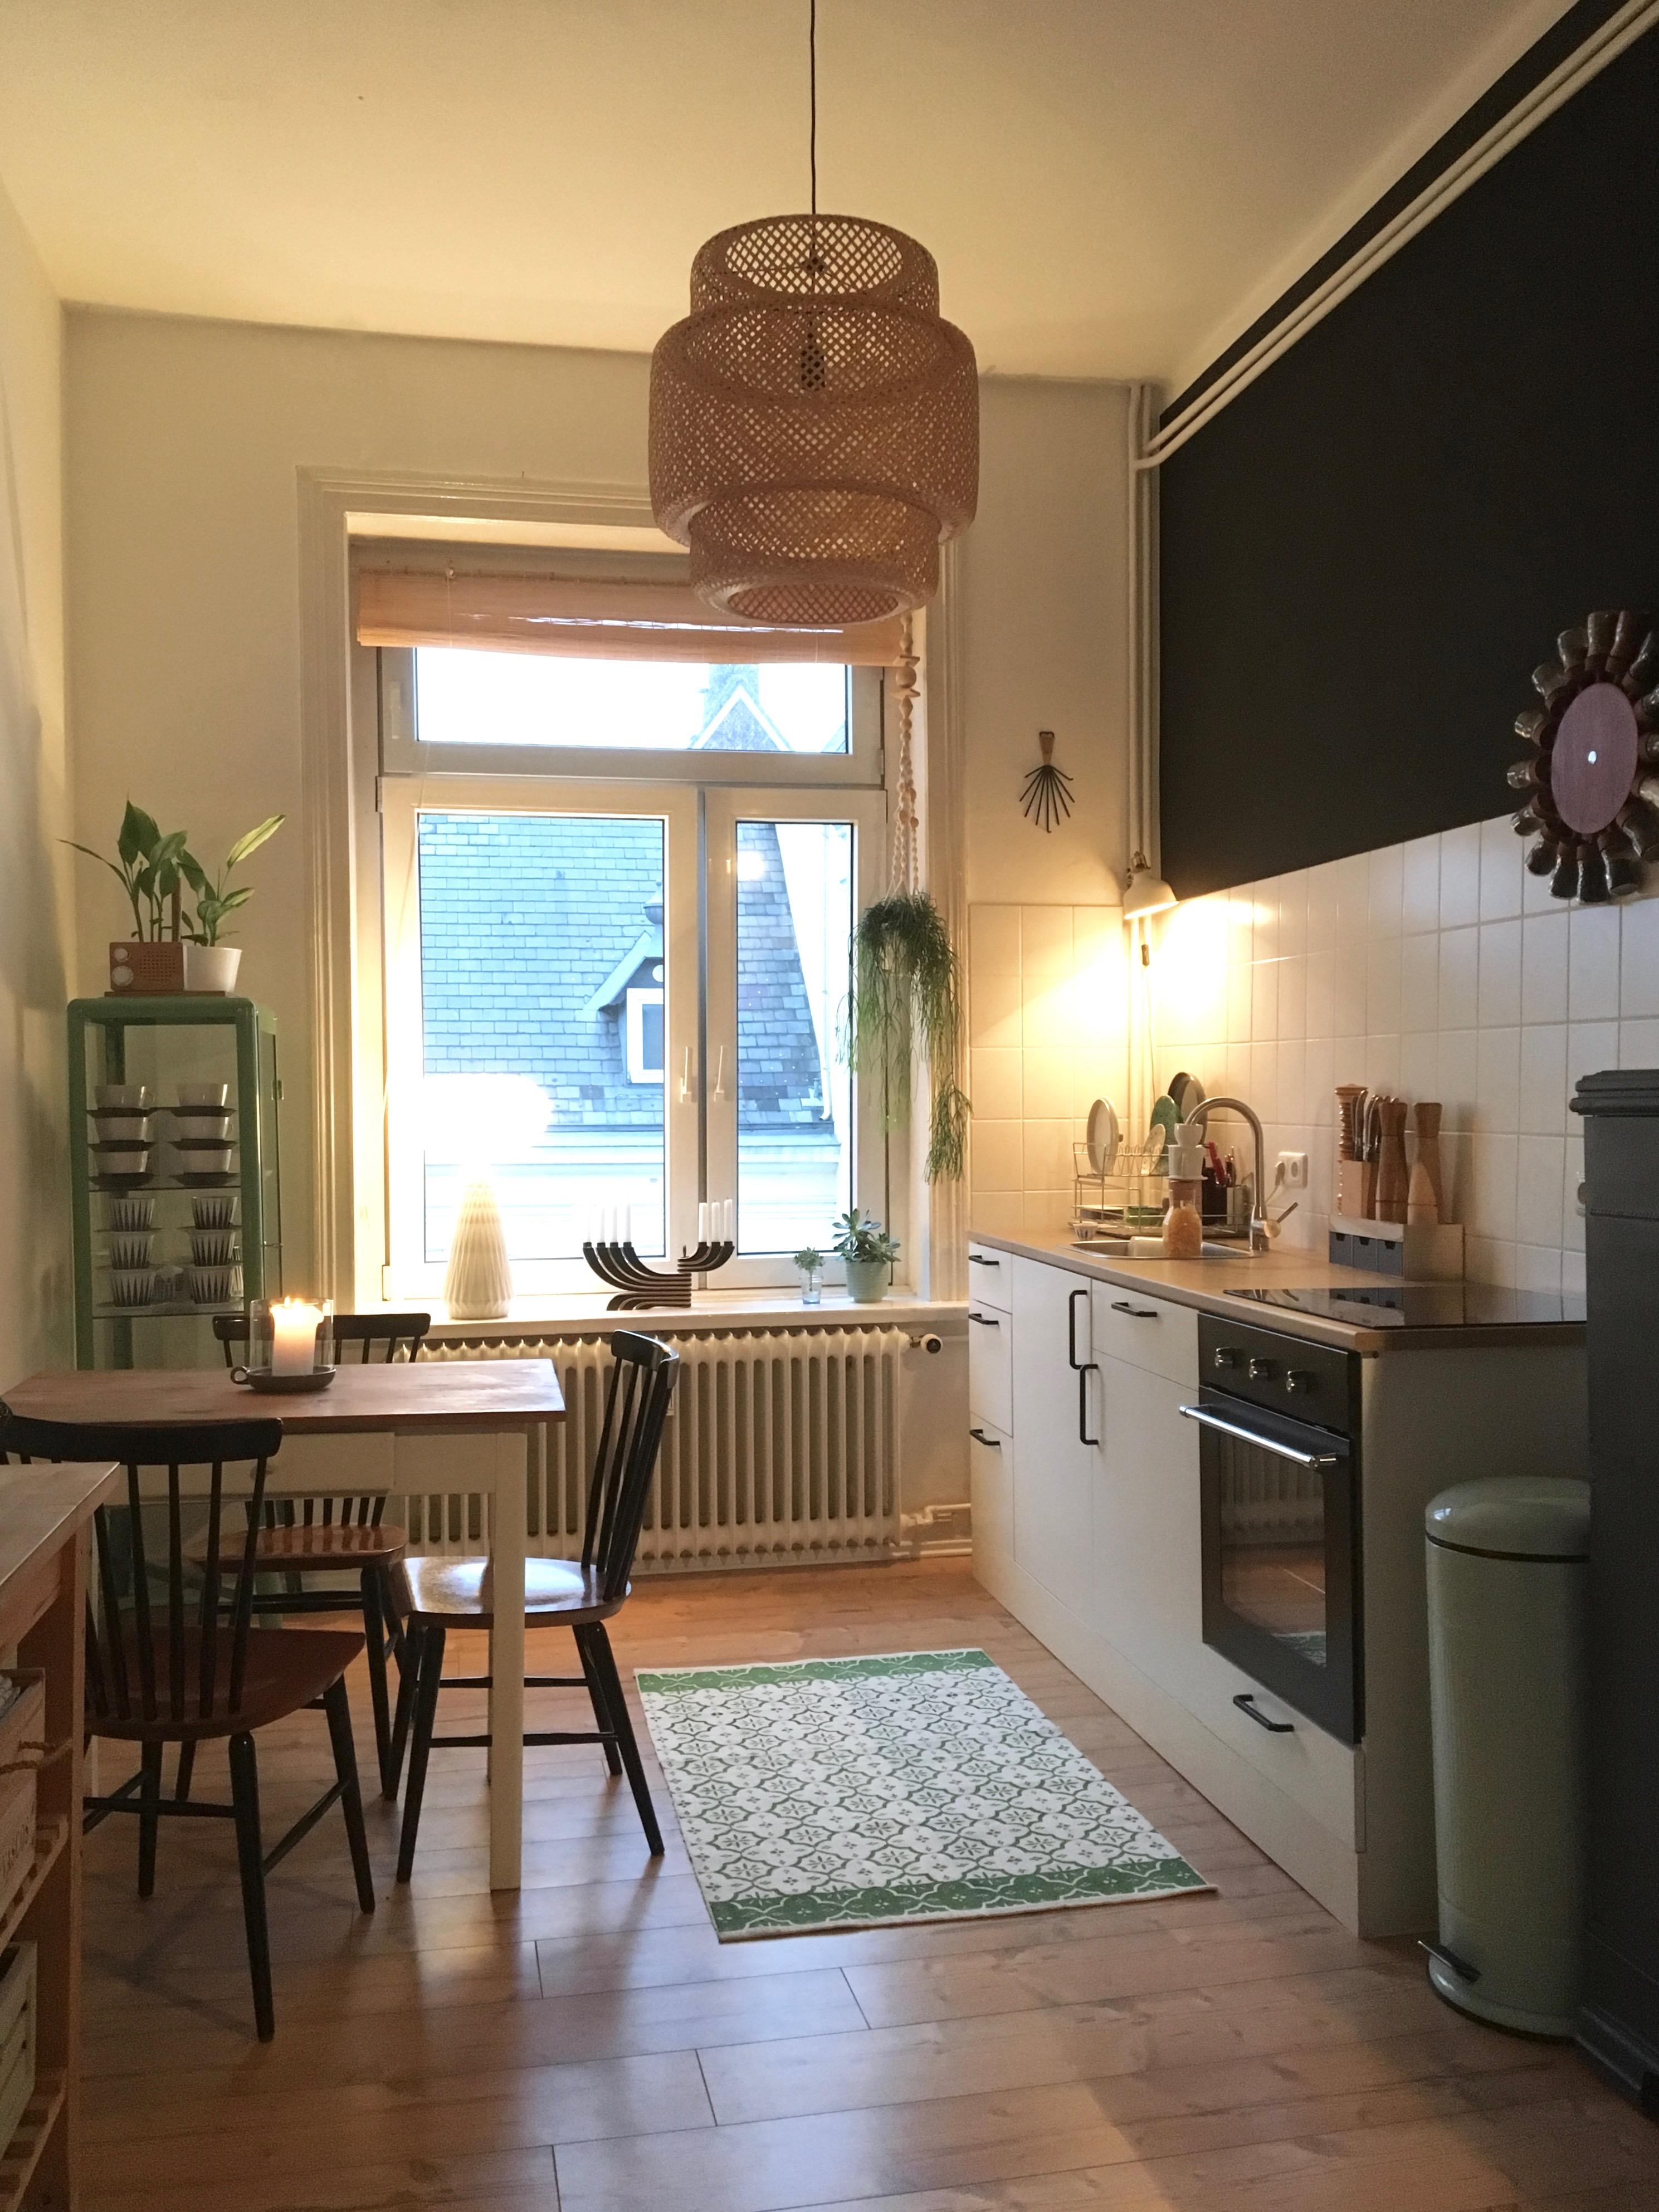 Evening mood in our kitchen 🖤
#kitchen #keramik #blackwall #vintage #altbauwohnung #interior #midcentury